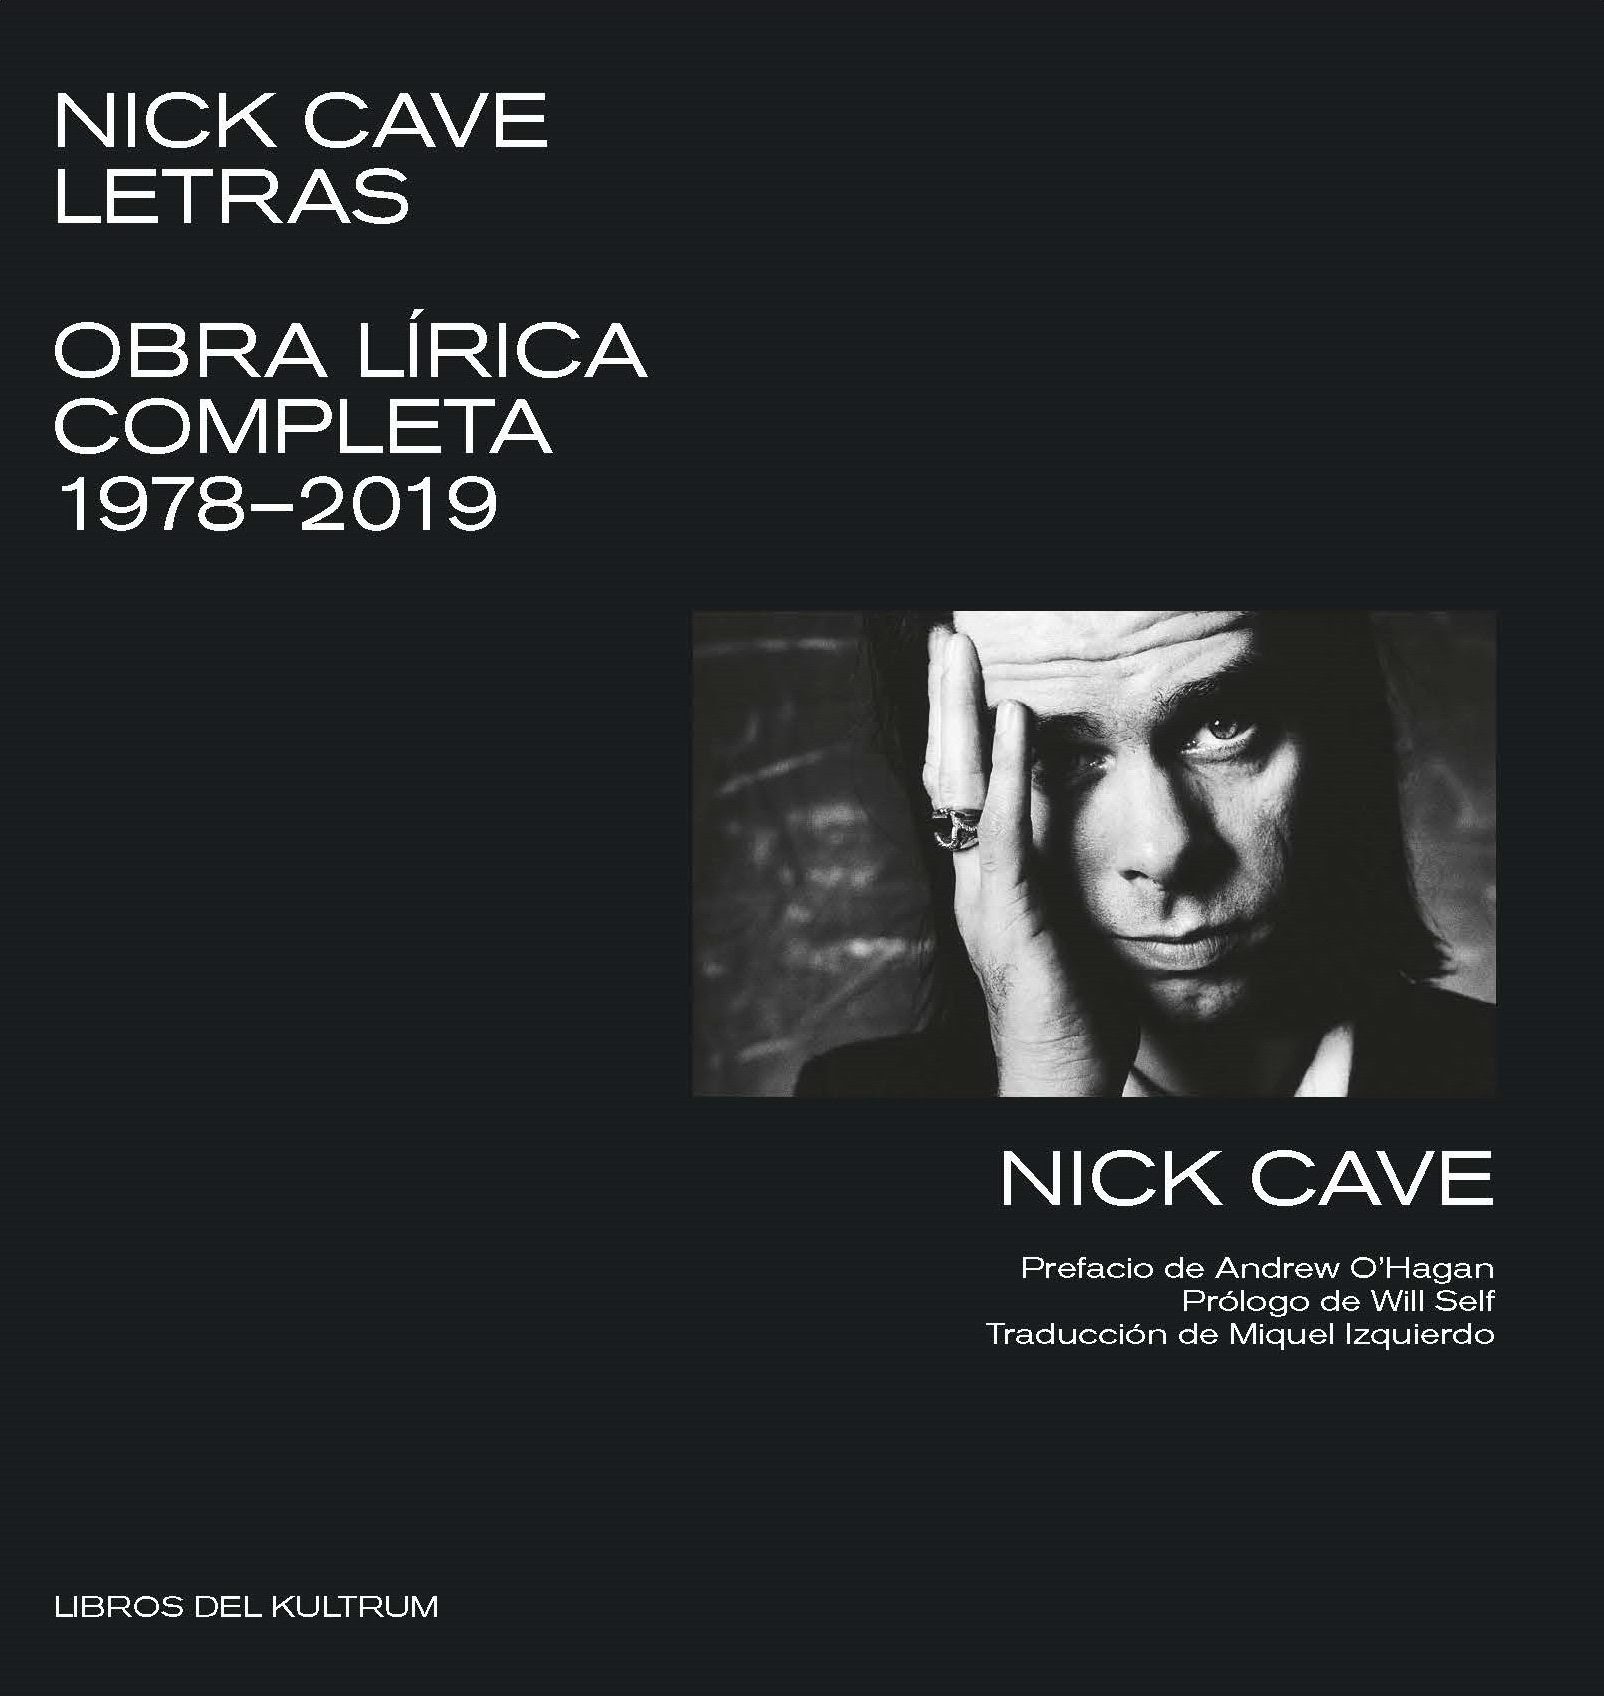 Nick Cave Letras – Obra lírica completa 1978-2019 (Libros del Kultrum)